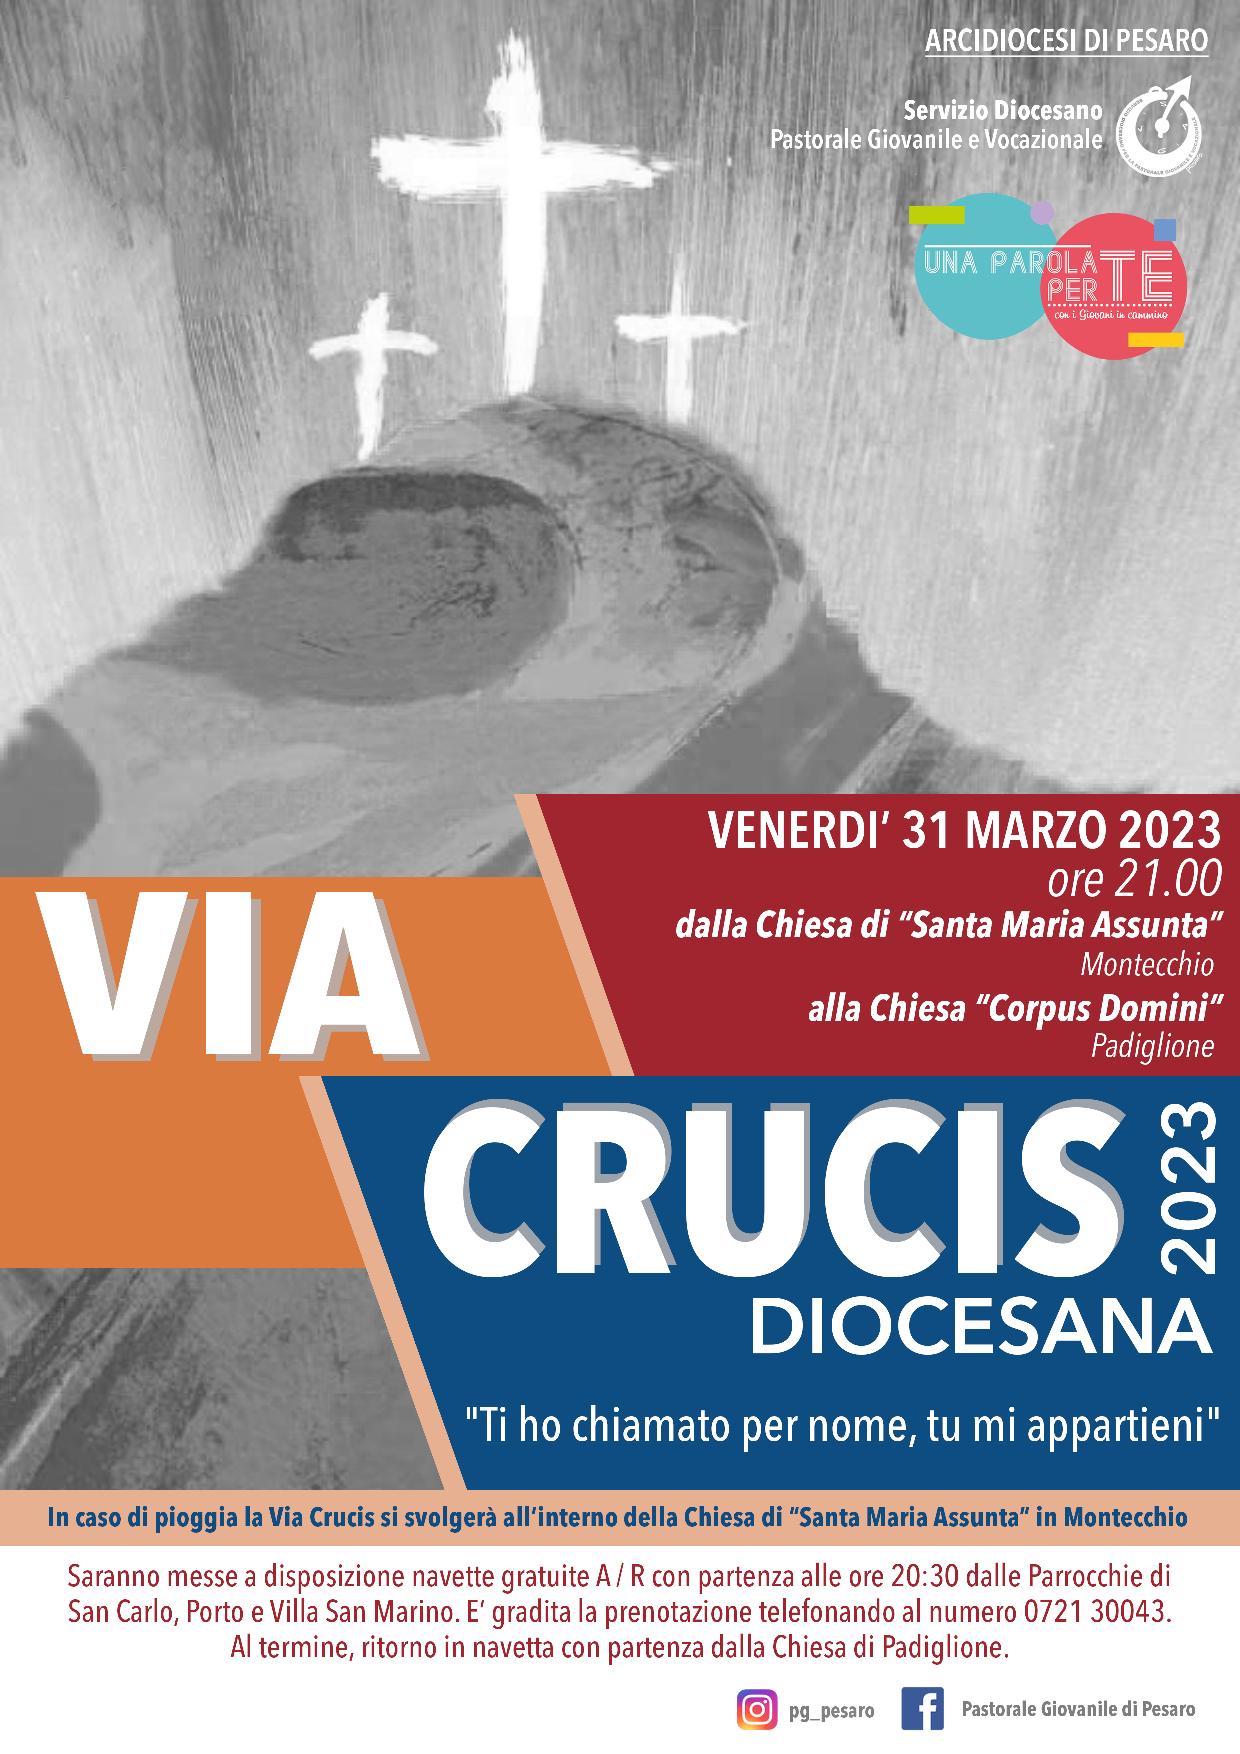 VIA CRUCIS DIOCESANA 2023 – Venerdì 31 marzo ore 21.00 dalla Chiesa di S. Maria Assunta in Montecchio alla Chiesa Corpus Domini in Padiglione